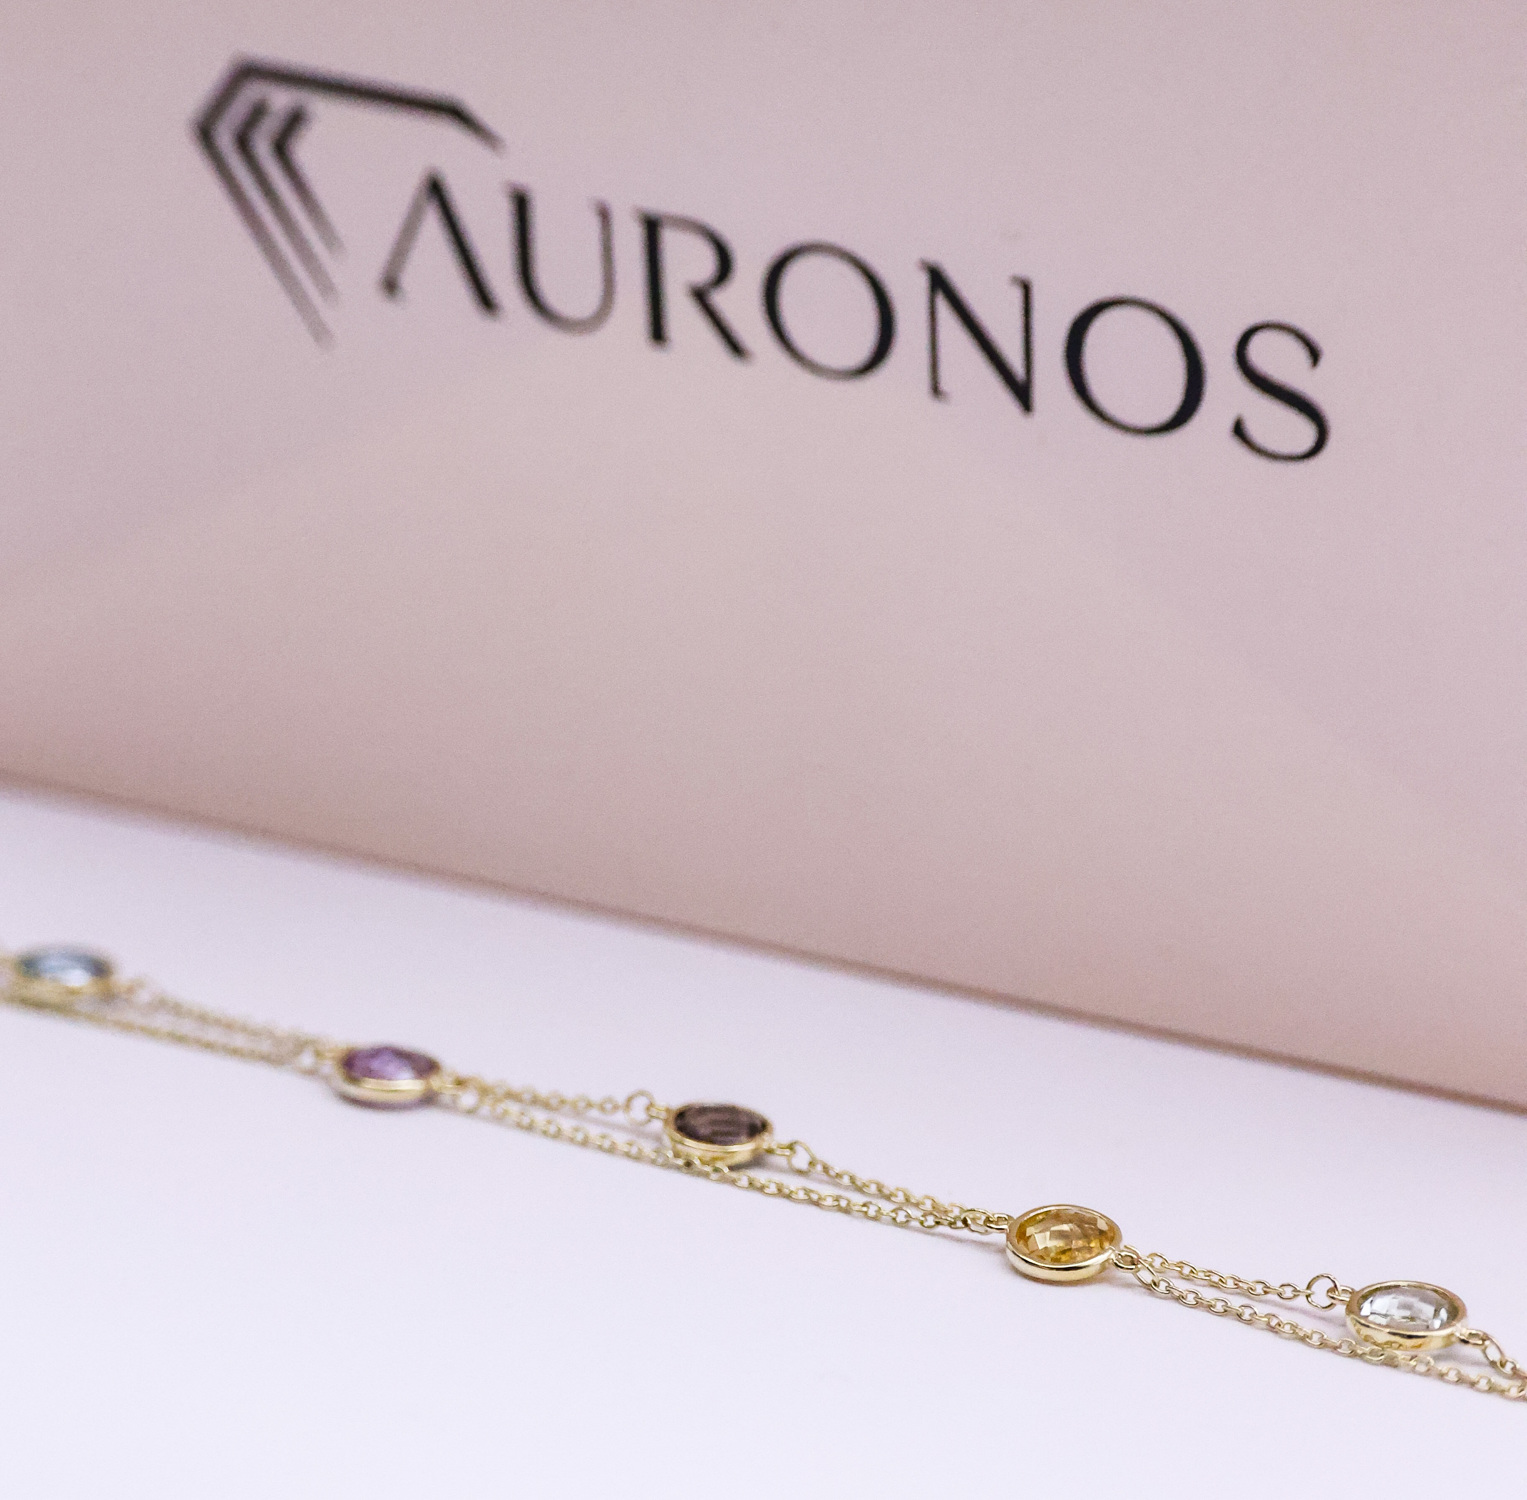 AURONOS Prestige Bracelet 18K yellow gold 6 coloured stones 19cm